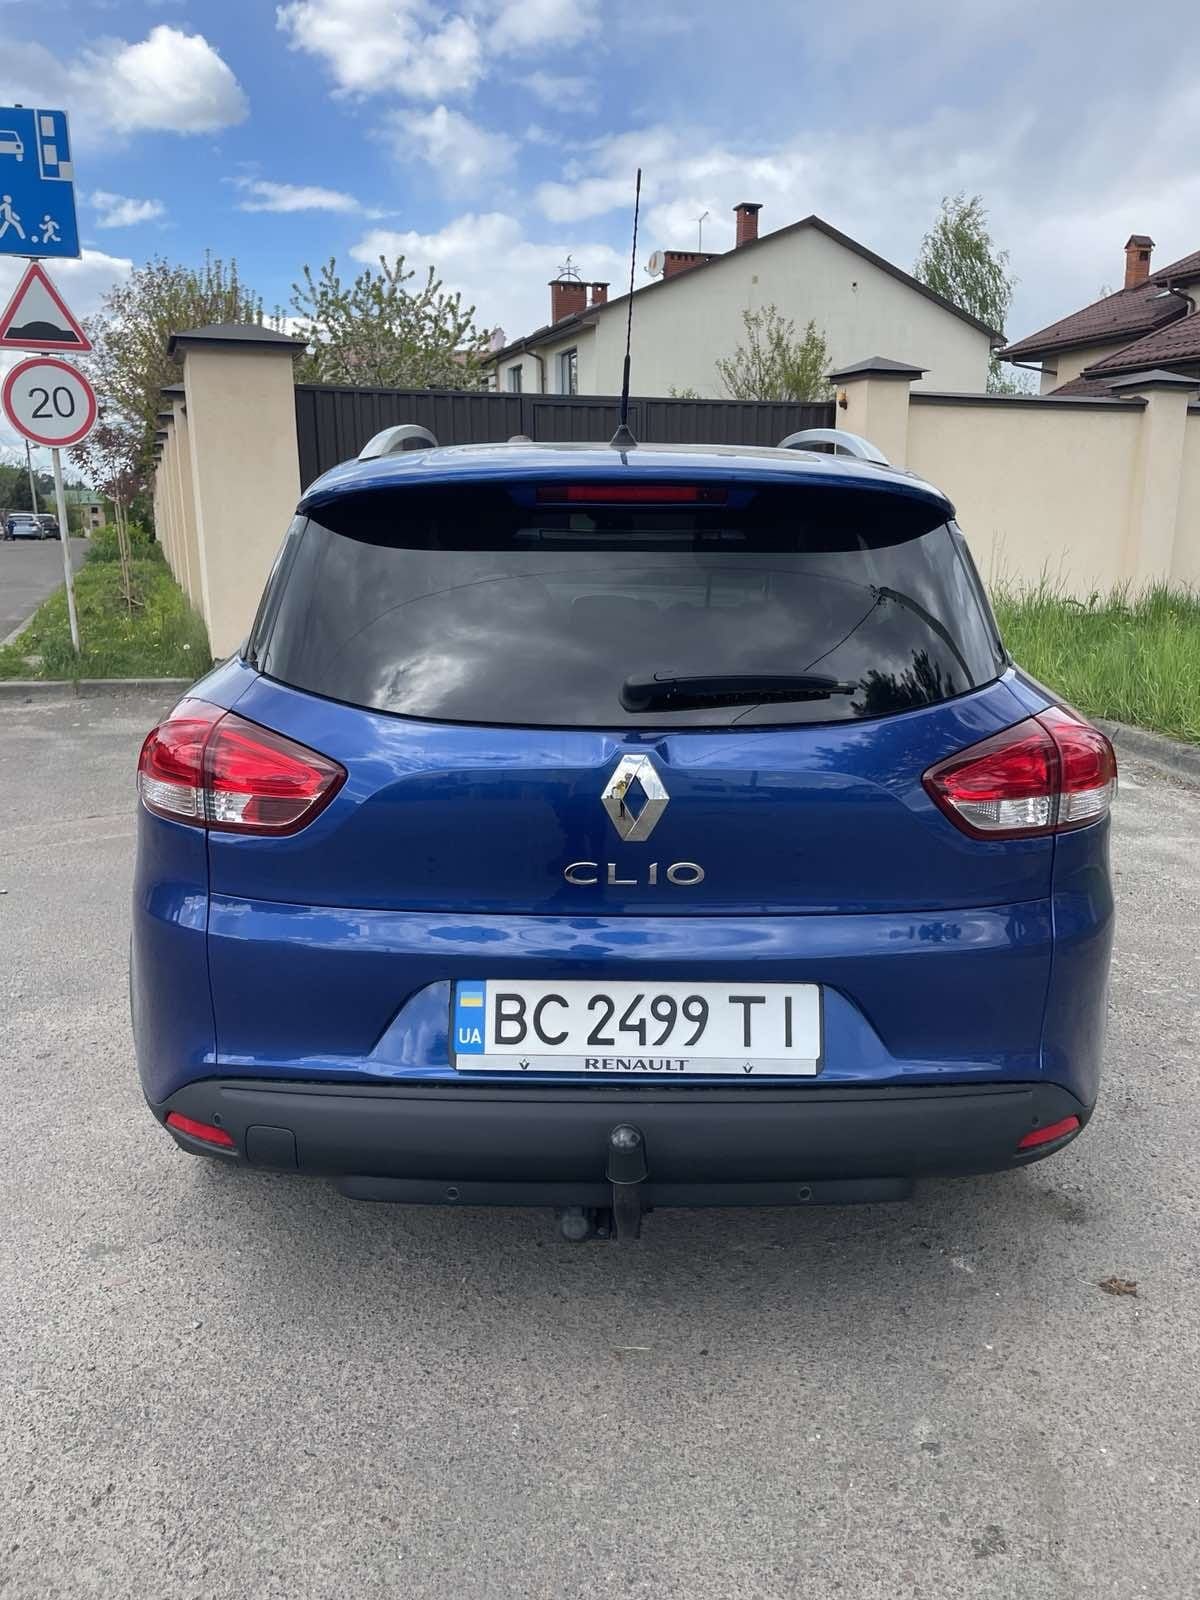 Renault Clio 2018 універсал терміново срочно